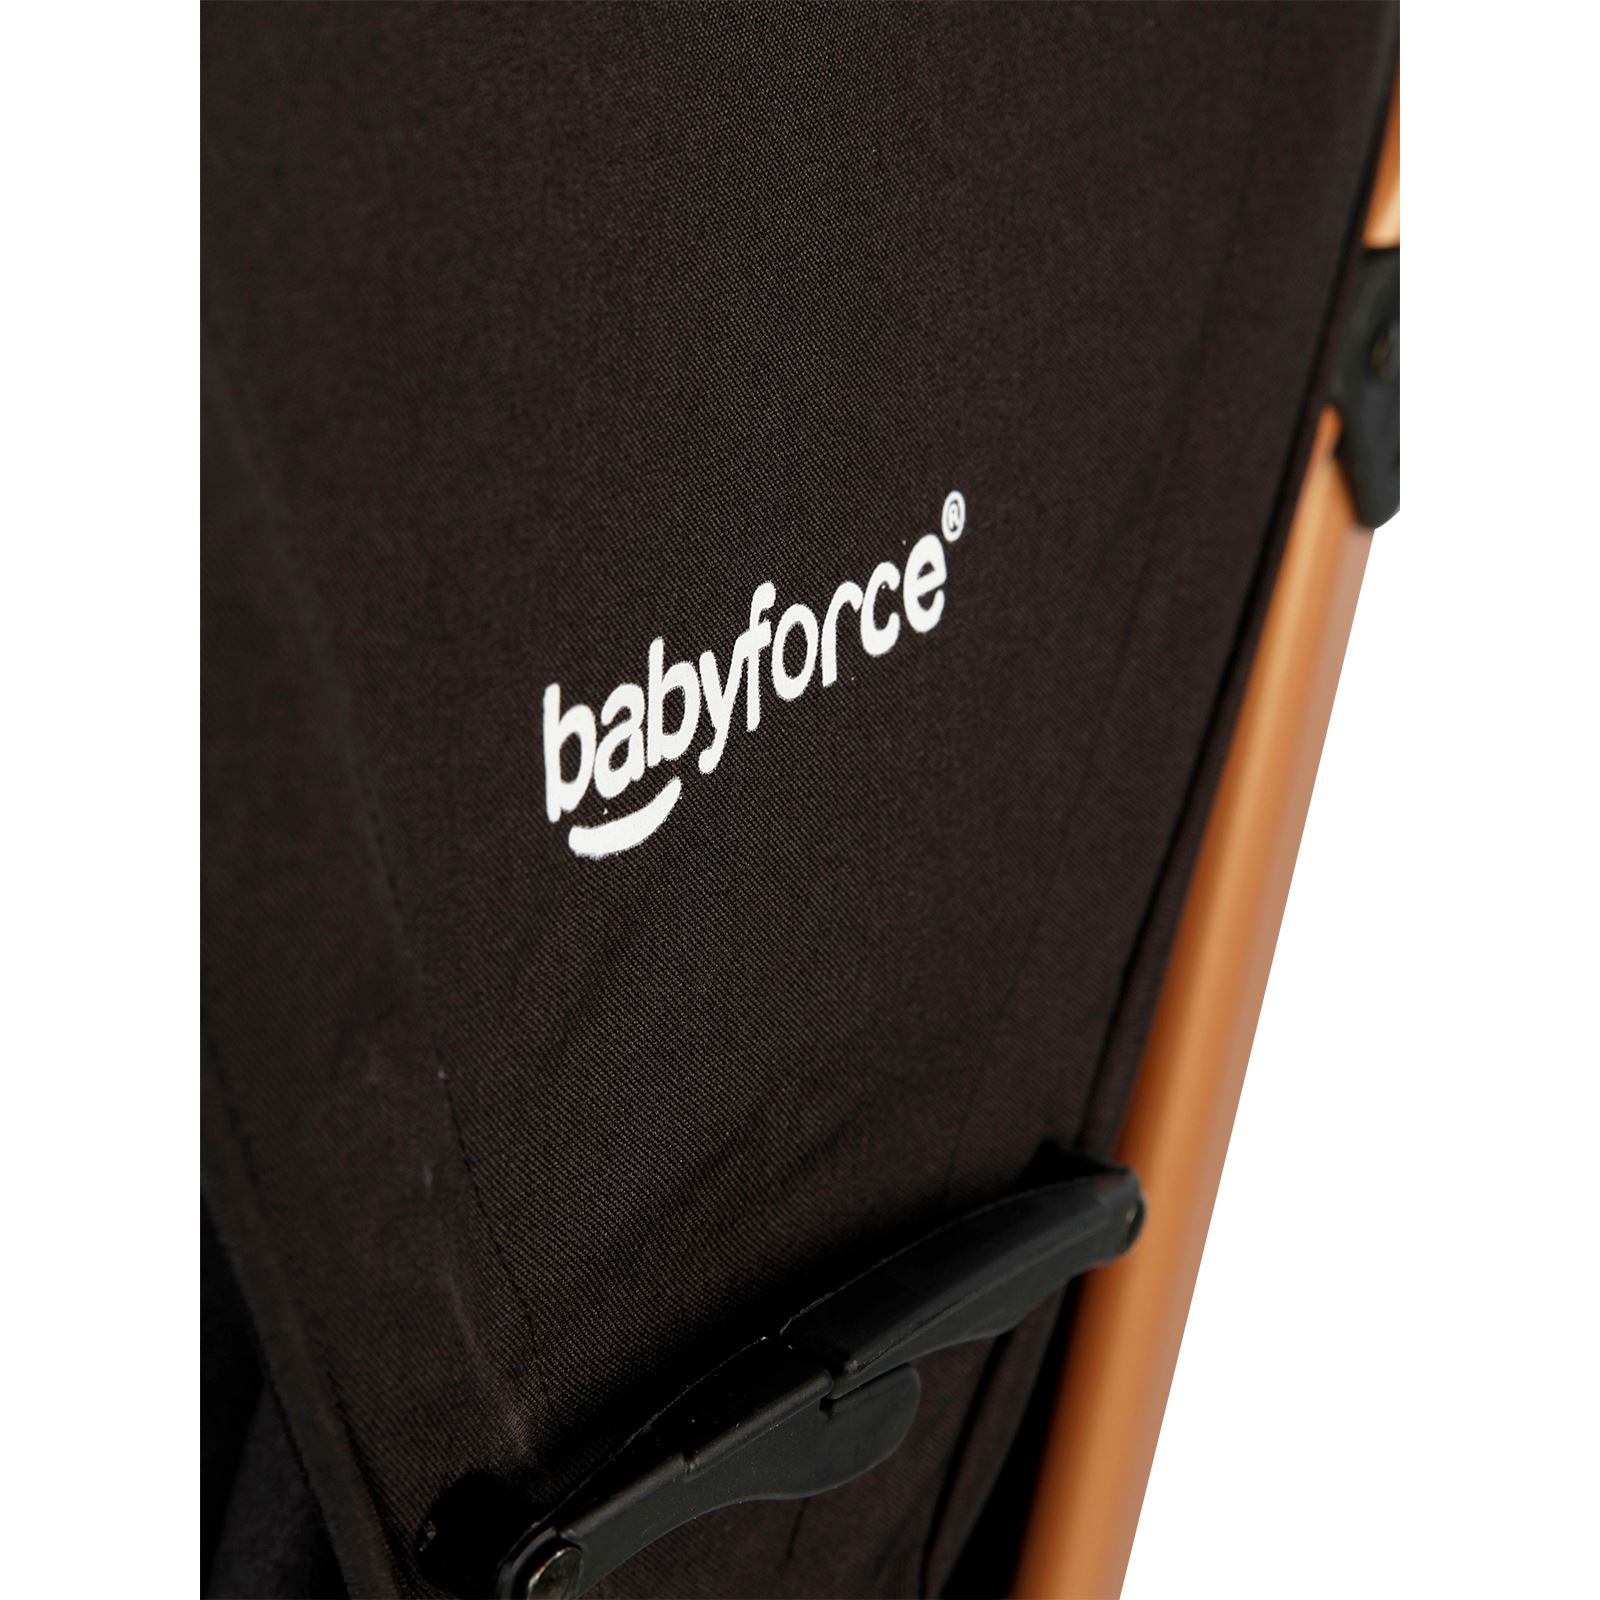 Baby Force Polo20 Baston Puset Bebek Arabası Siyah